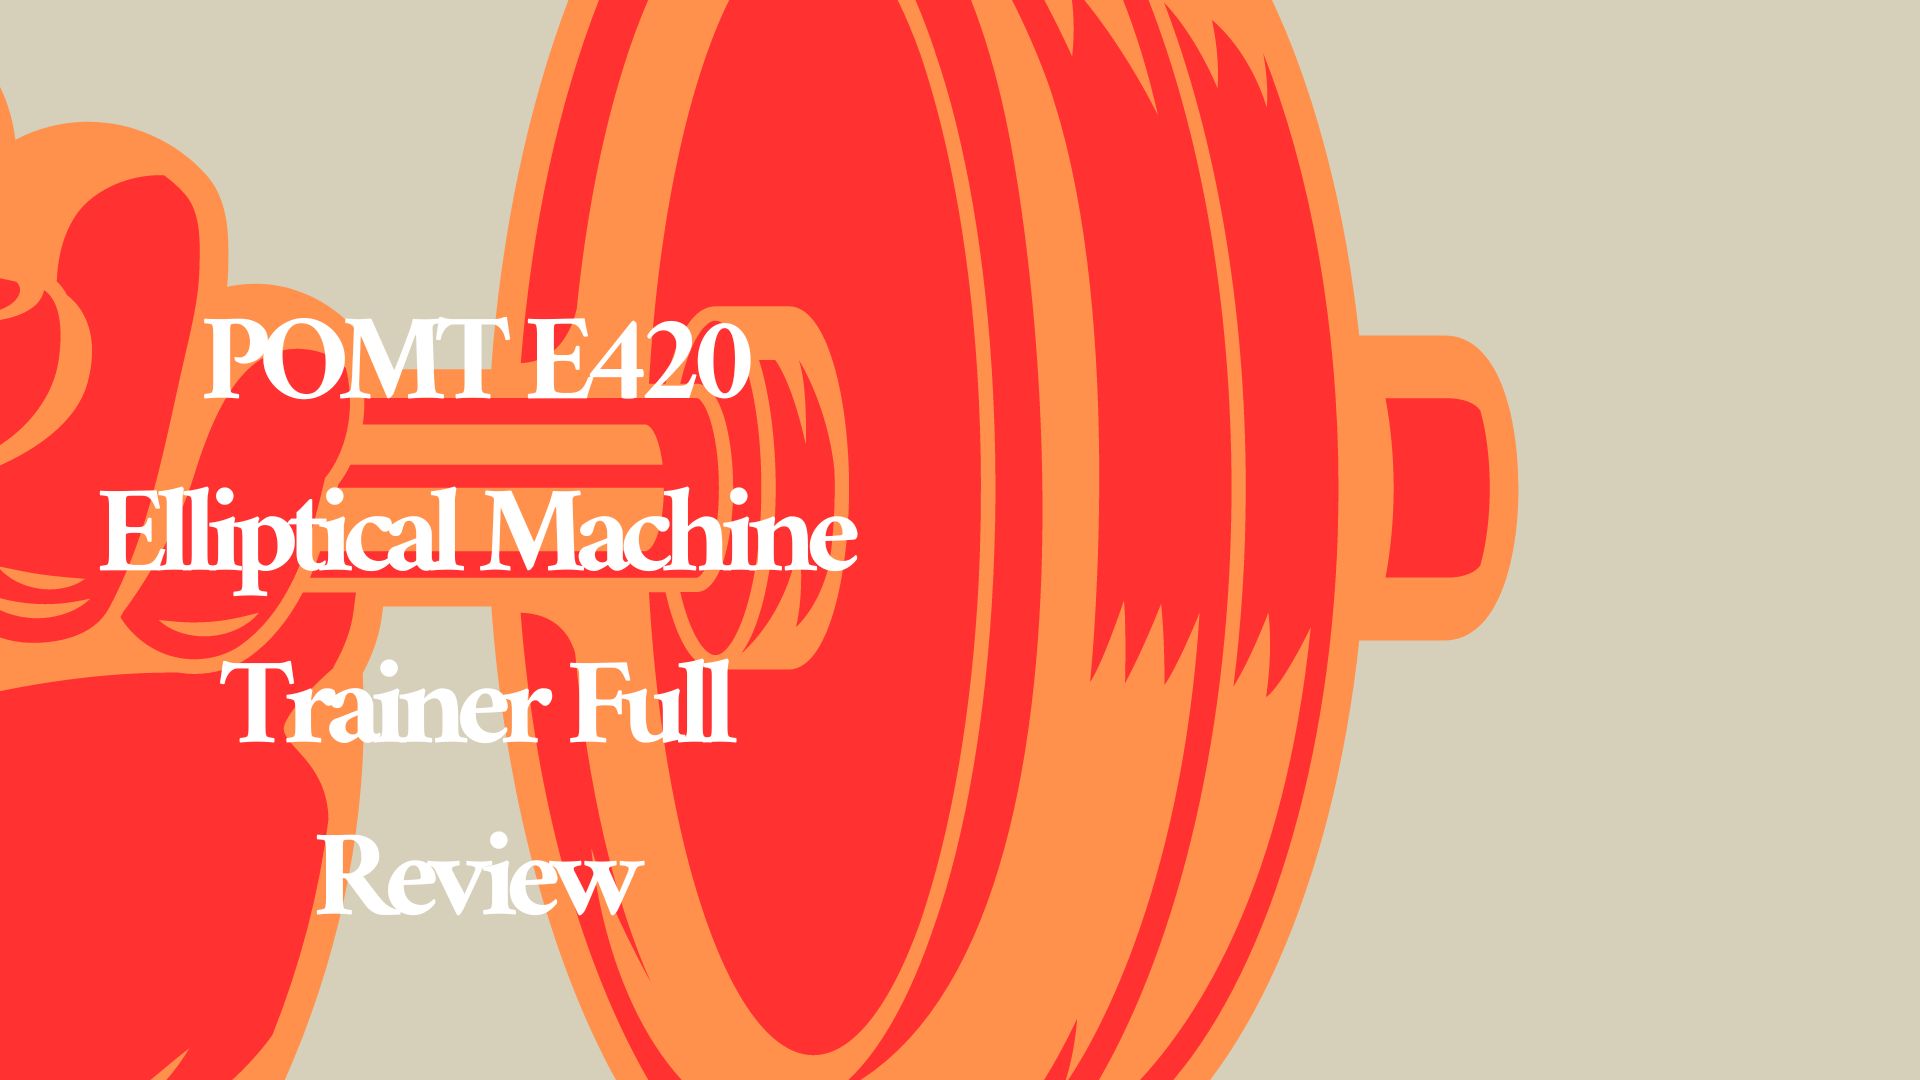 POMT E420 Elliptical Machine Trainer Full Review